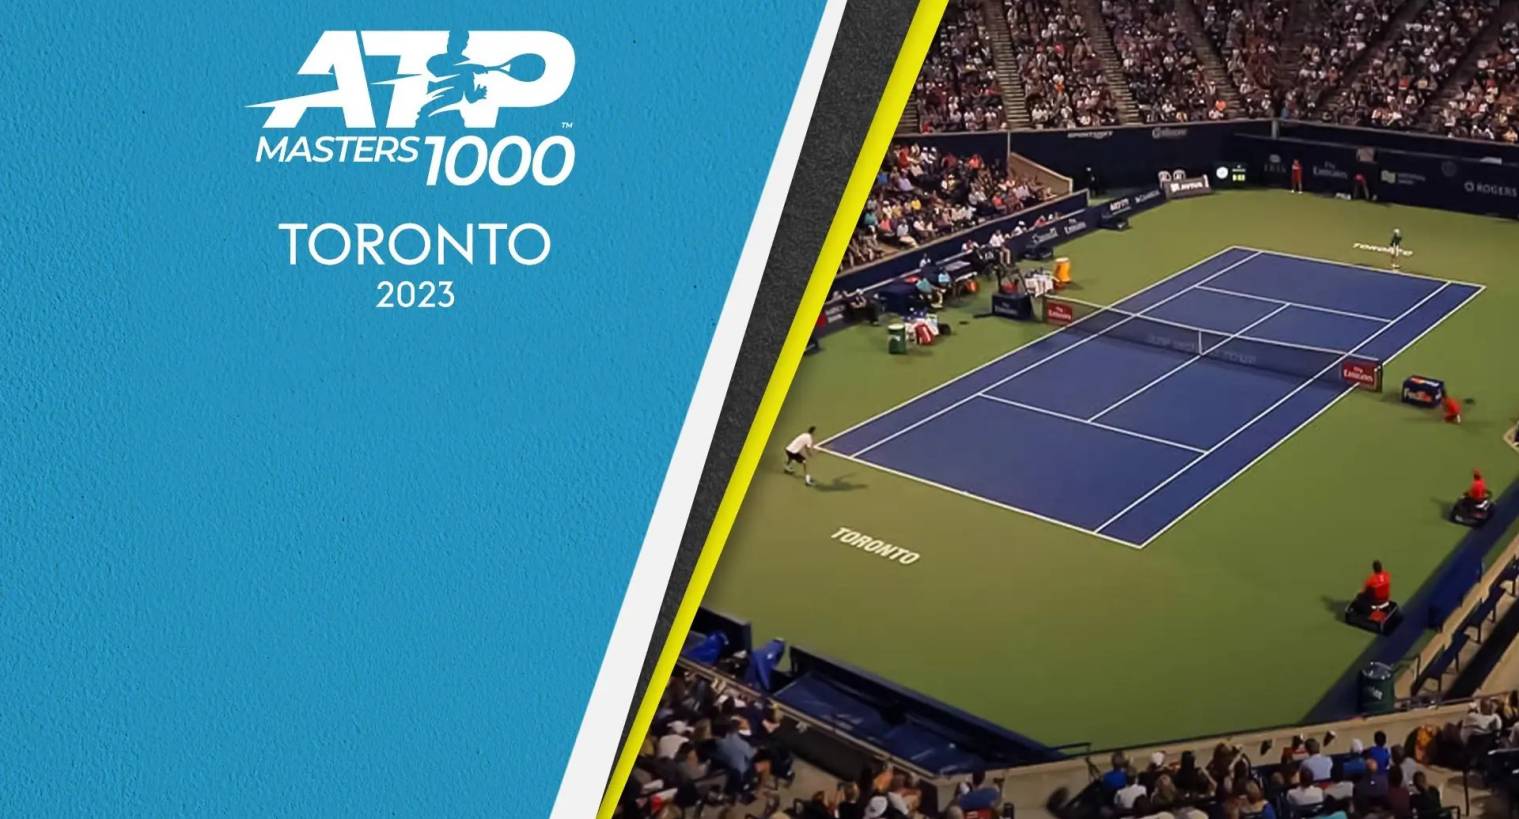 Foto - Atp Master 1000 Toronto 2023 su Sky e streaming live NOW con Alcaraz, Medvedev e Sinner